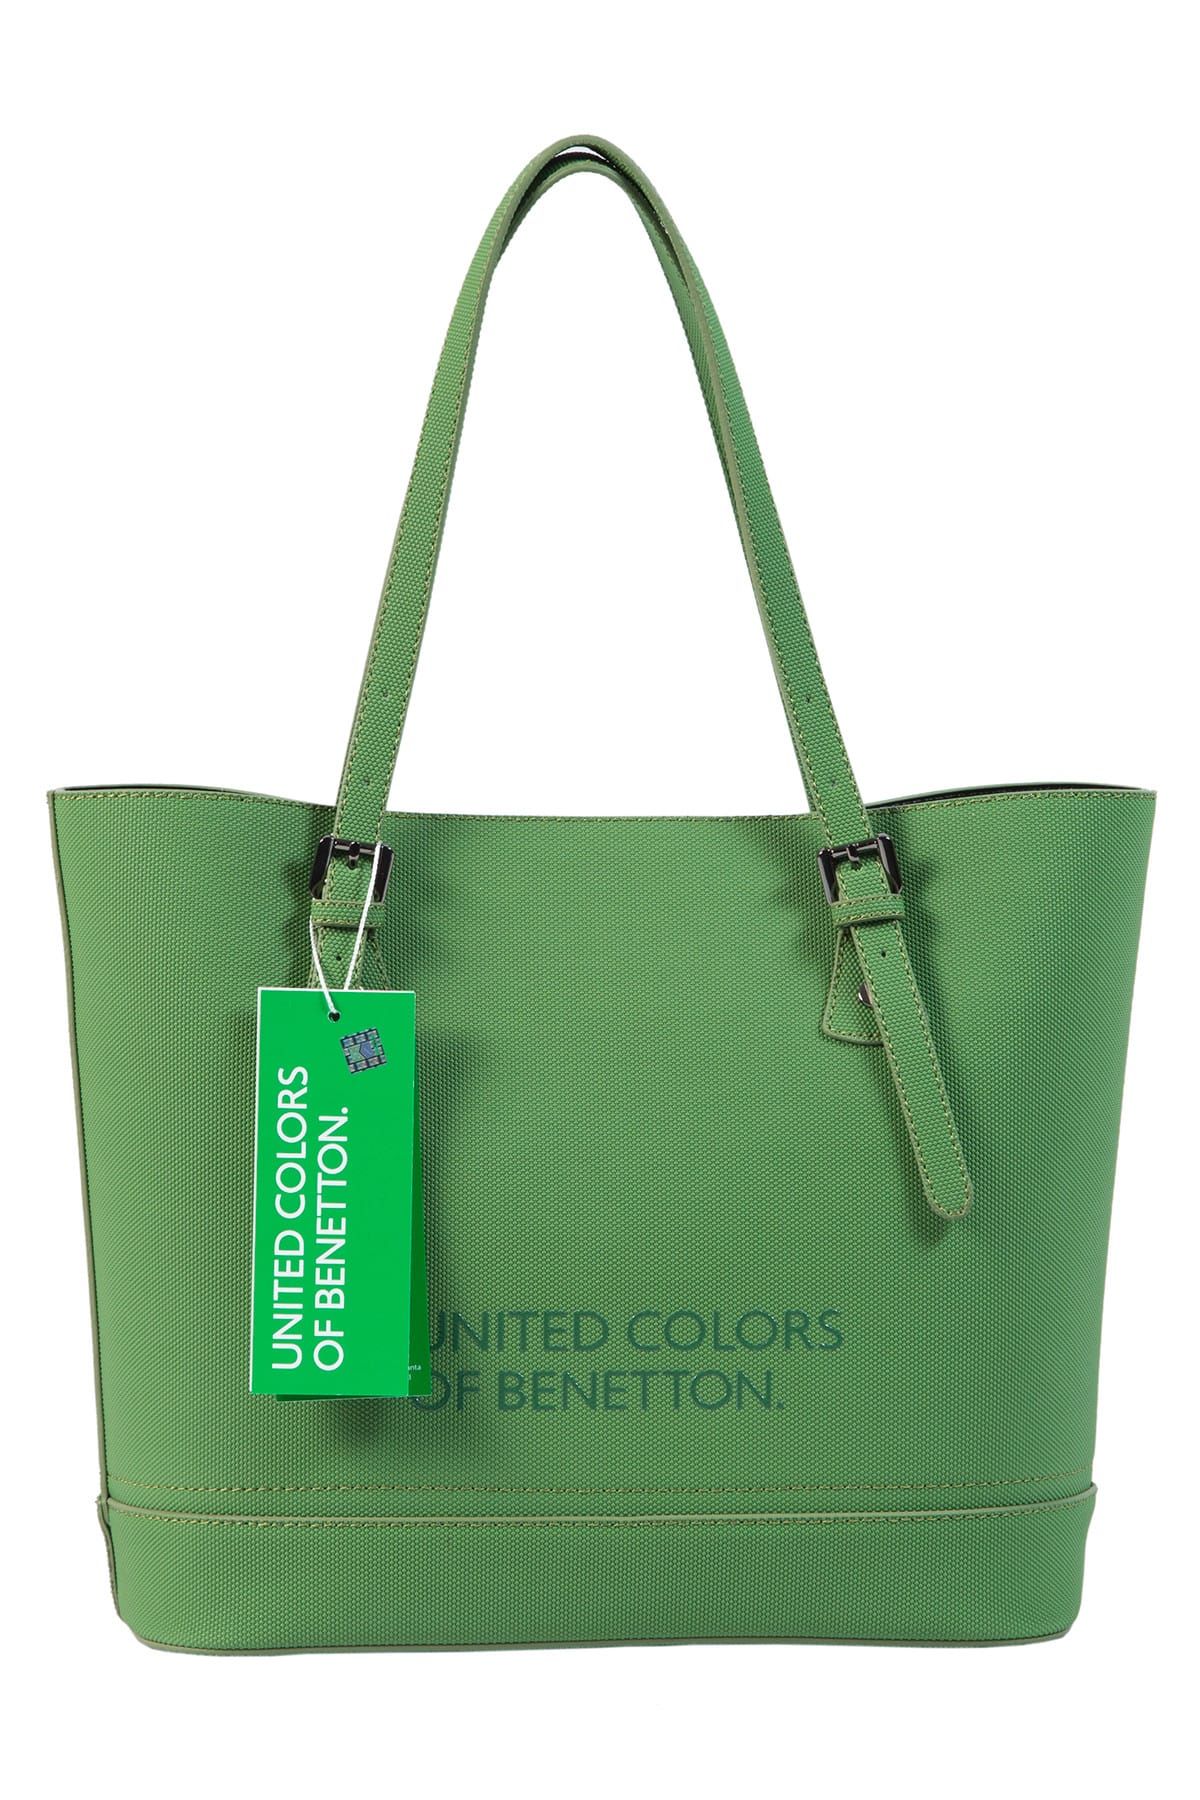 United Colors of Benetton Yeşil Kadın Omuz Çantası BNT72